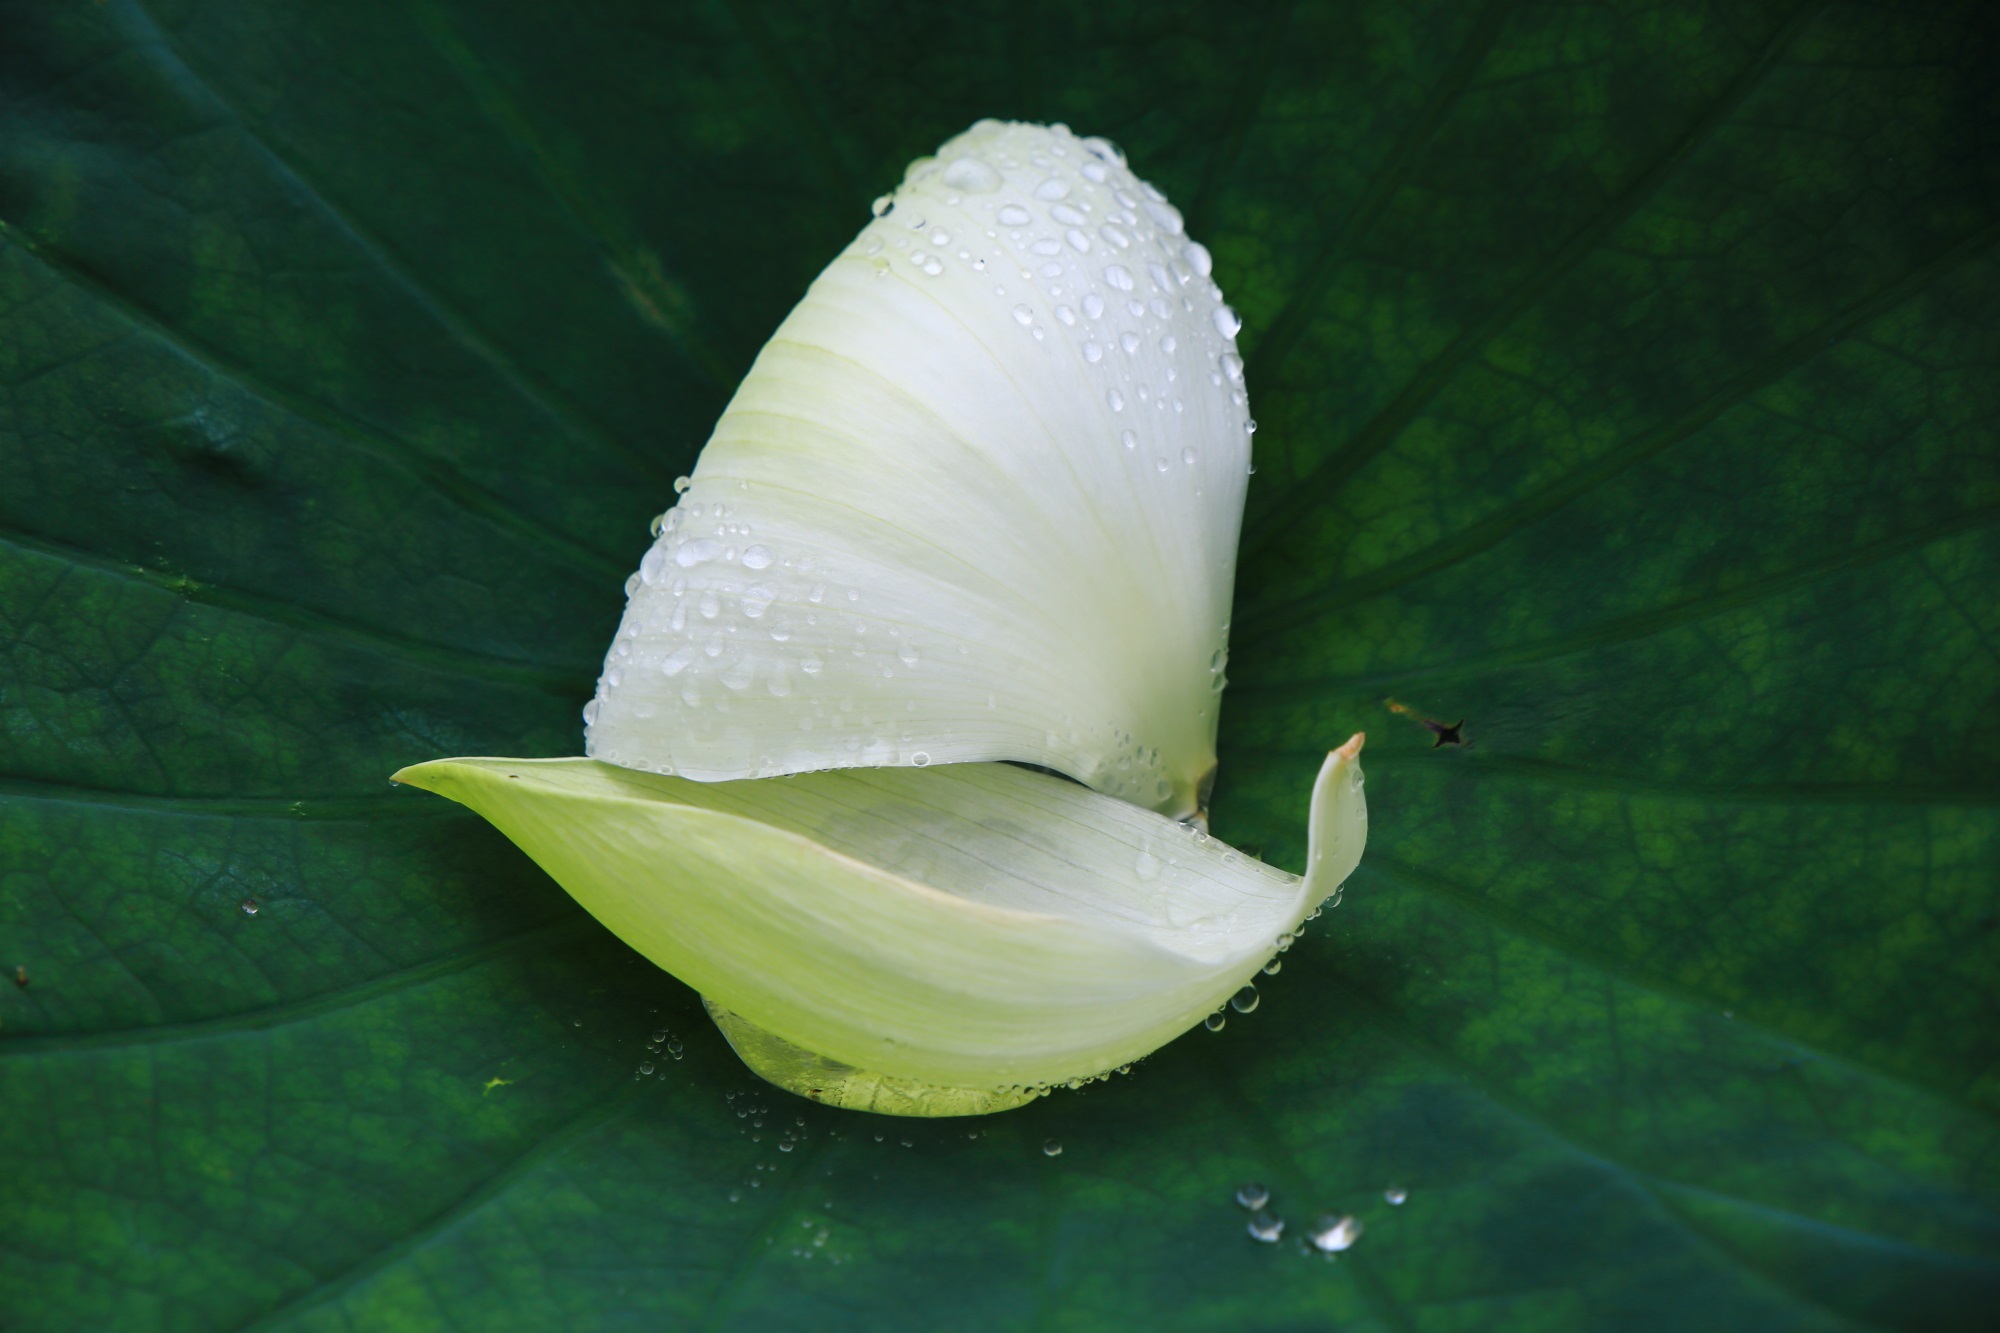 水滴とともに葉に散ったハスの白い蓮の花びら